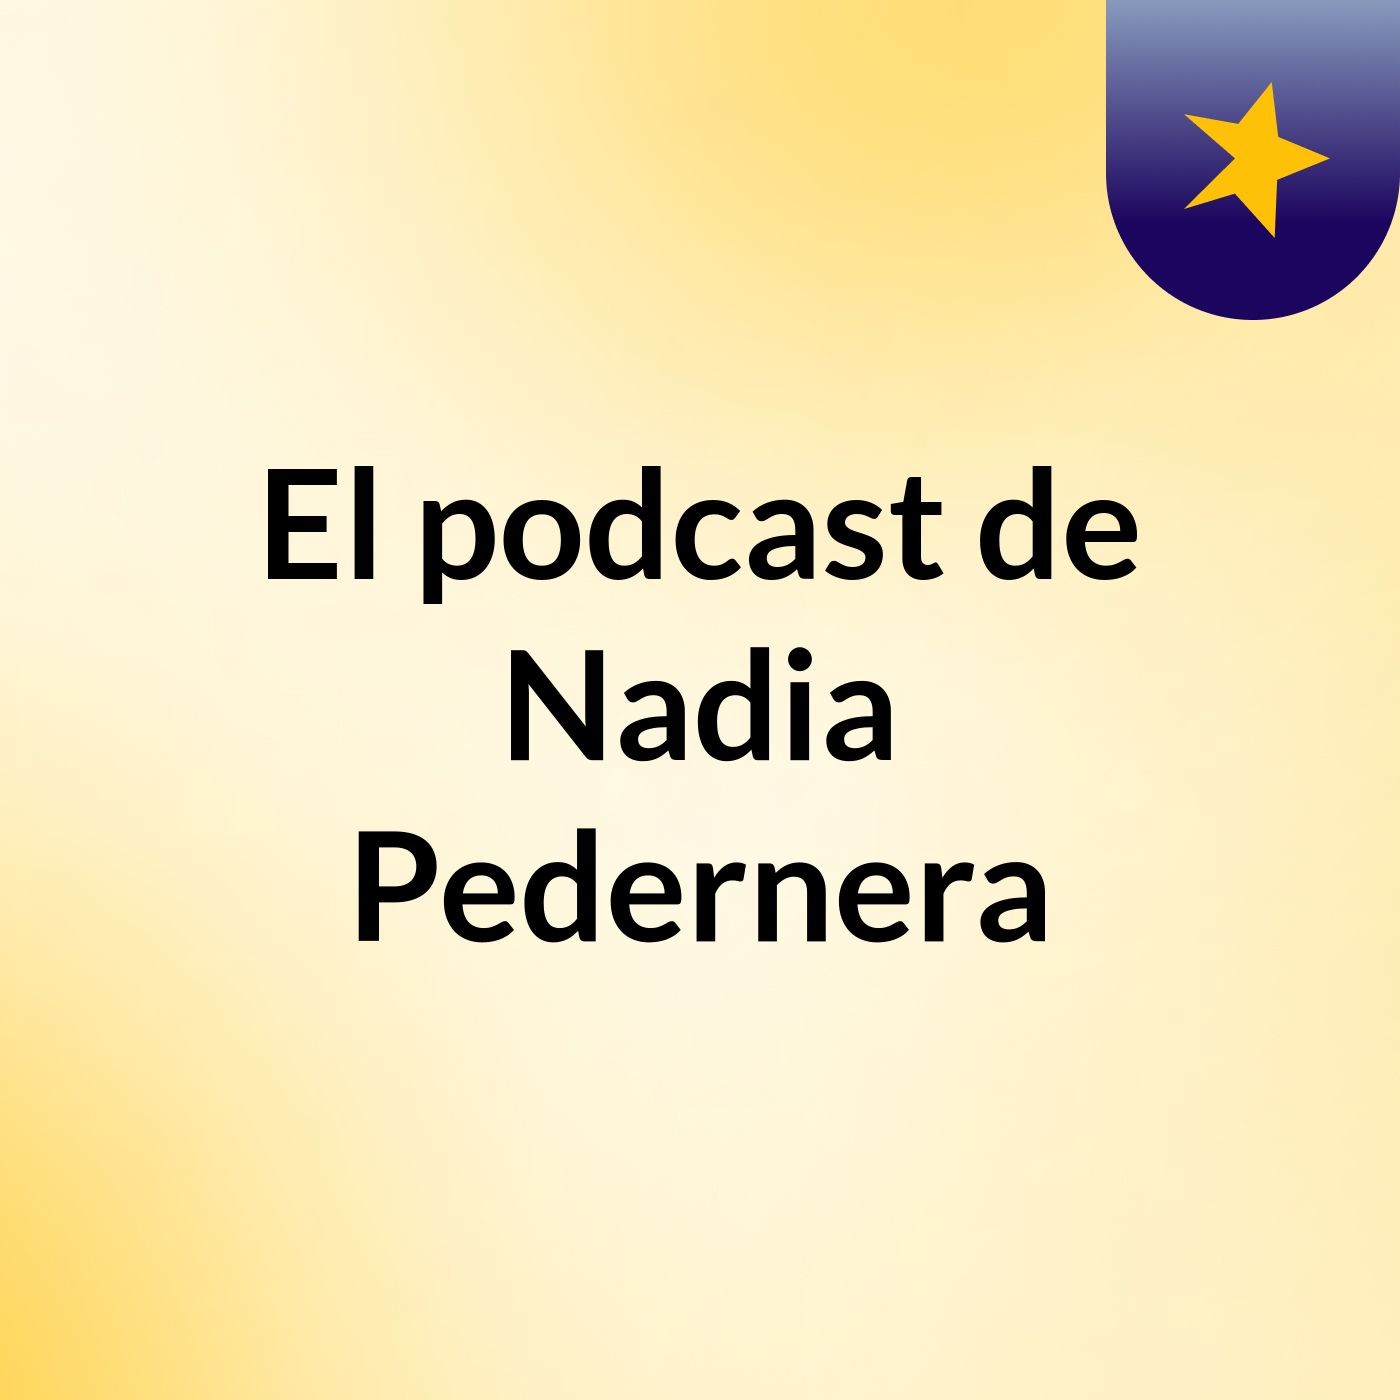 Episodio 17 - El podcast de Nadia Pedernera